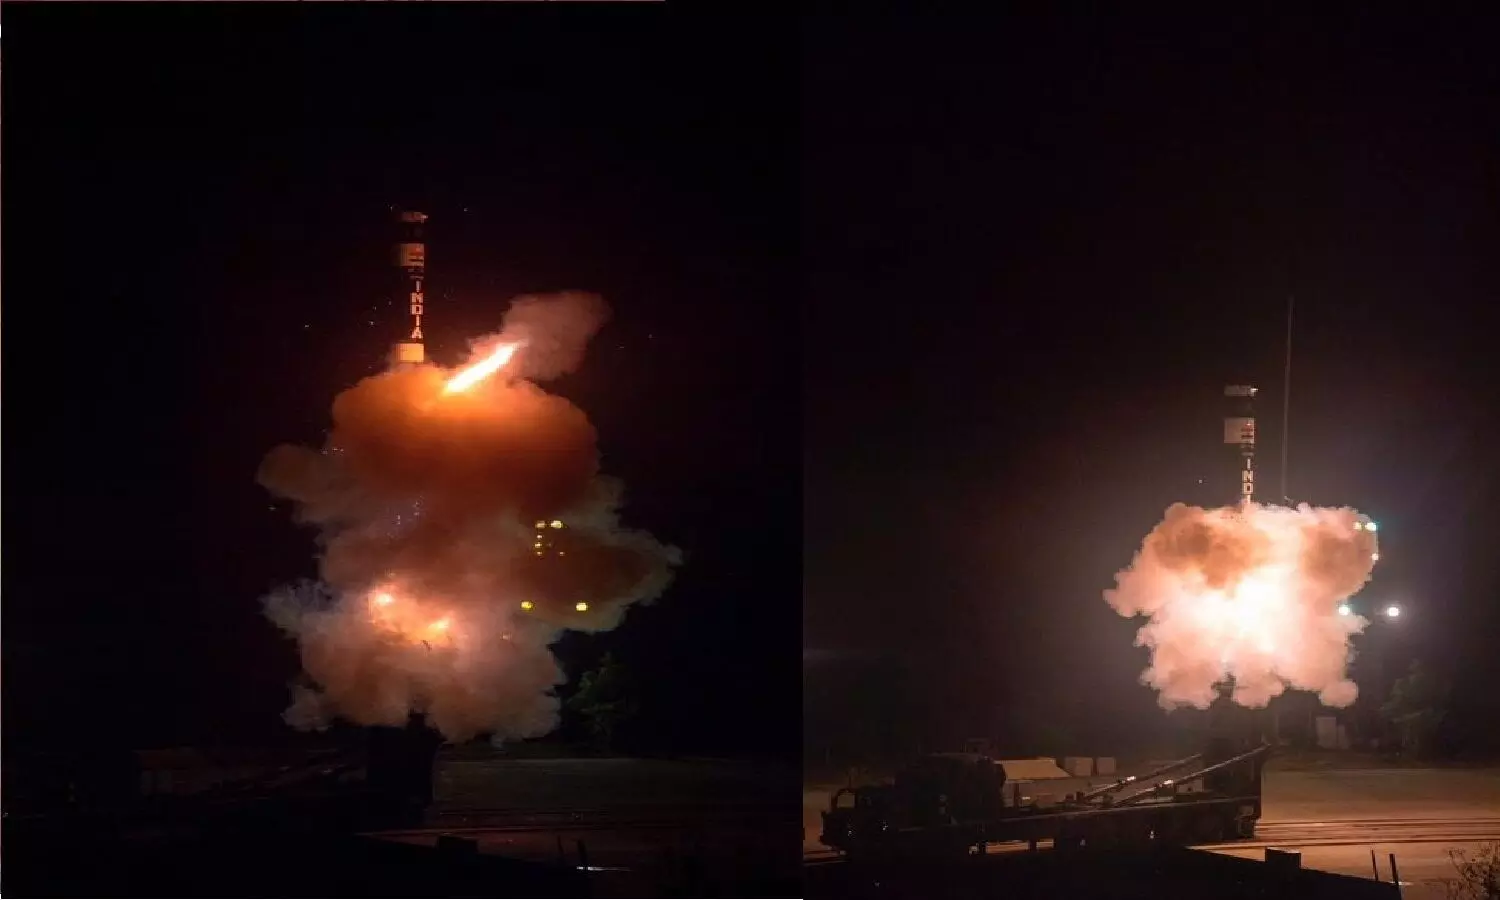 DRDO ने न्यू जनरेशन बैलेस्टिक मिसाइल Agni Prime का किया सफल परीक्षण! भारत के दुश्मनों की खैर नहीं